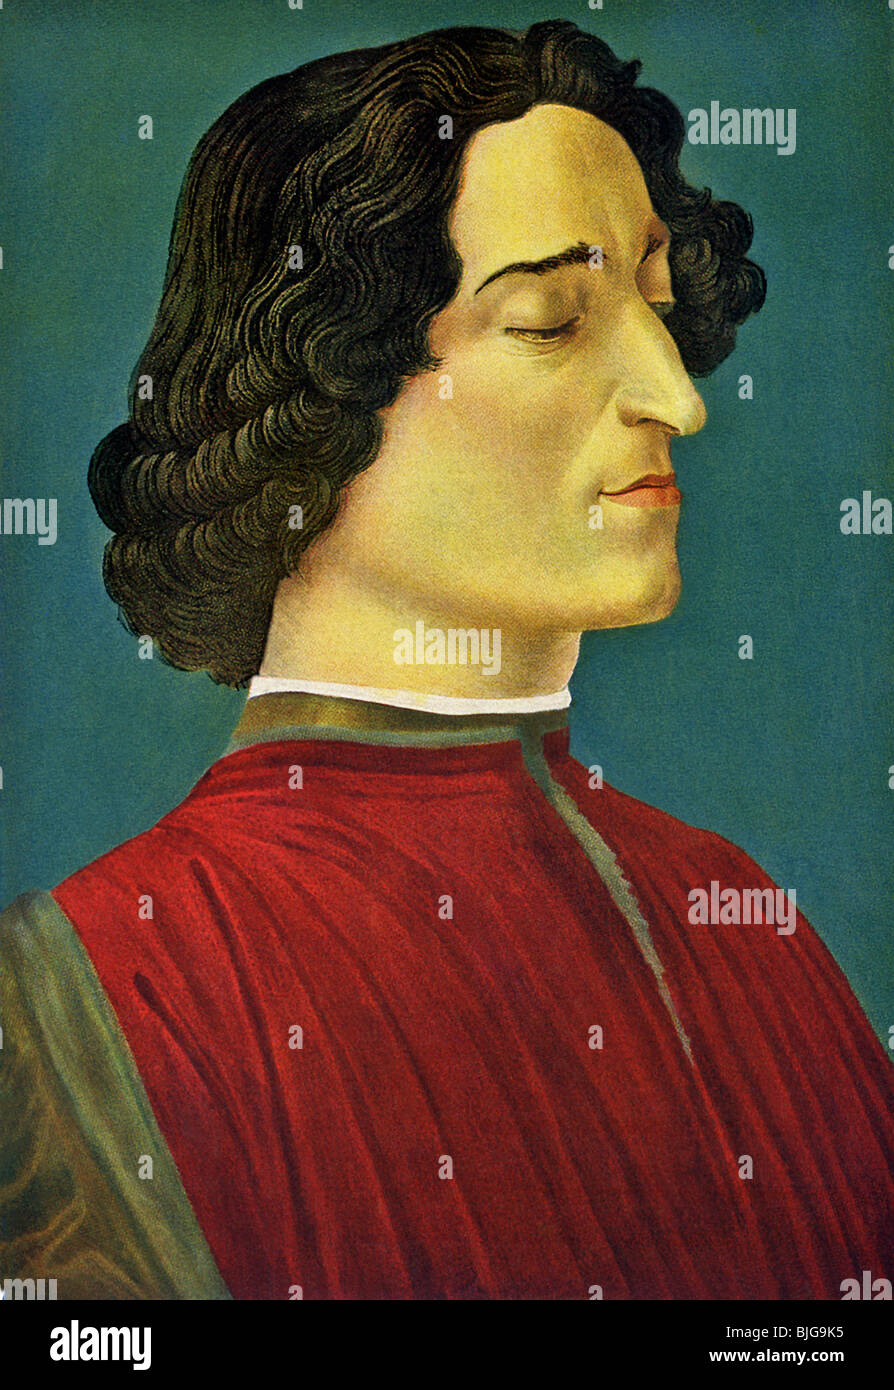 Ce portrait de Giuliano de Medici a été fait par Sandro Botticelli (ch. 1444-1510), l'artiste florentin de la Renaissance. Banque D'Images